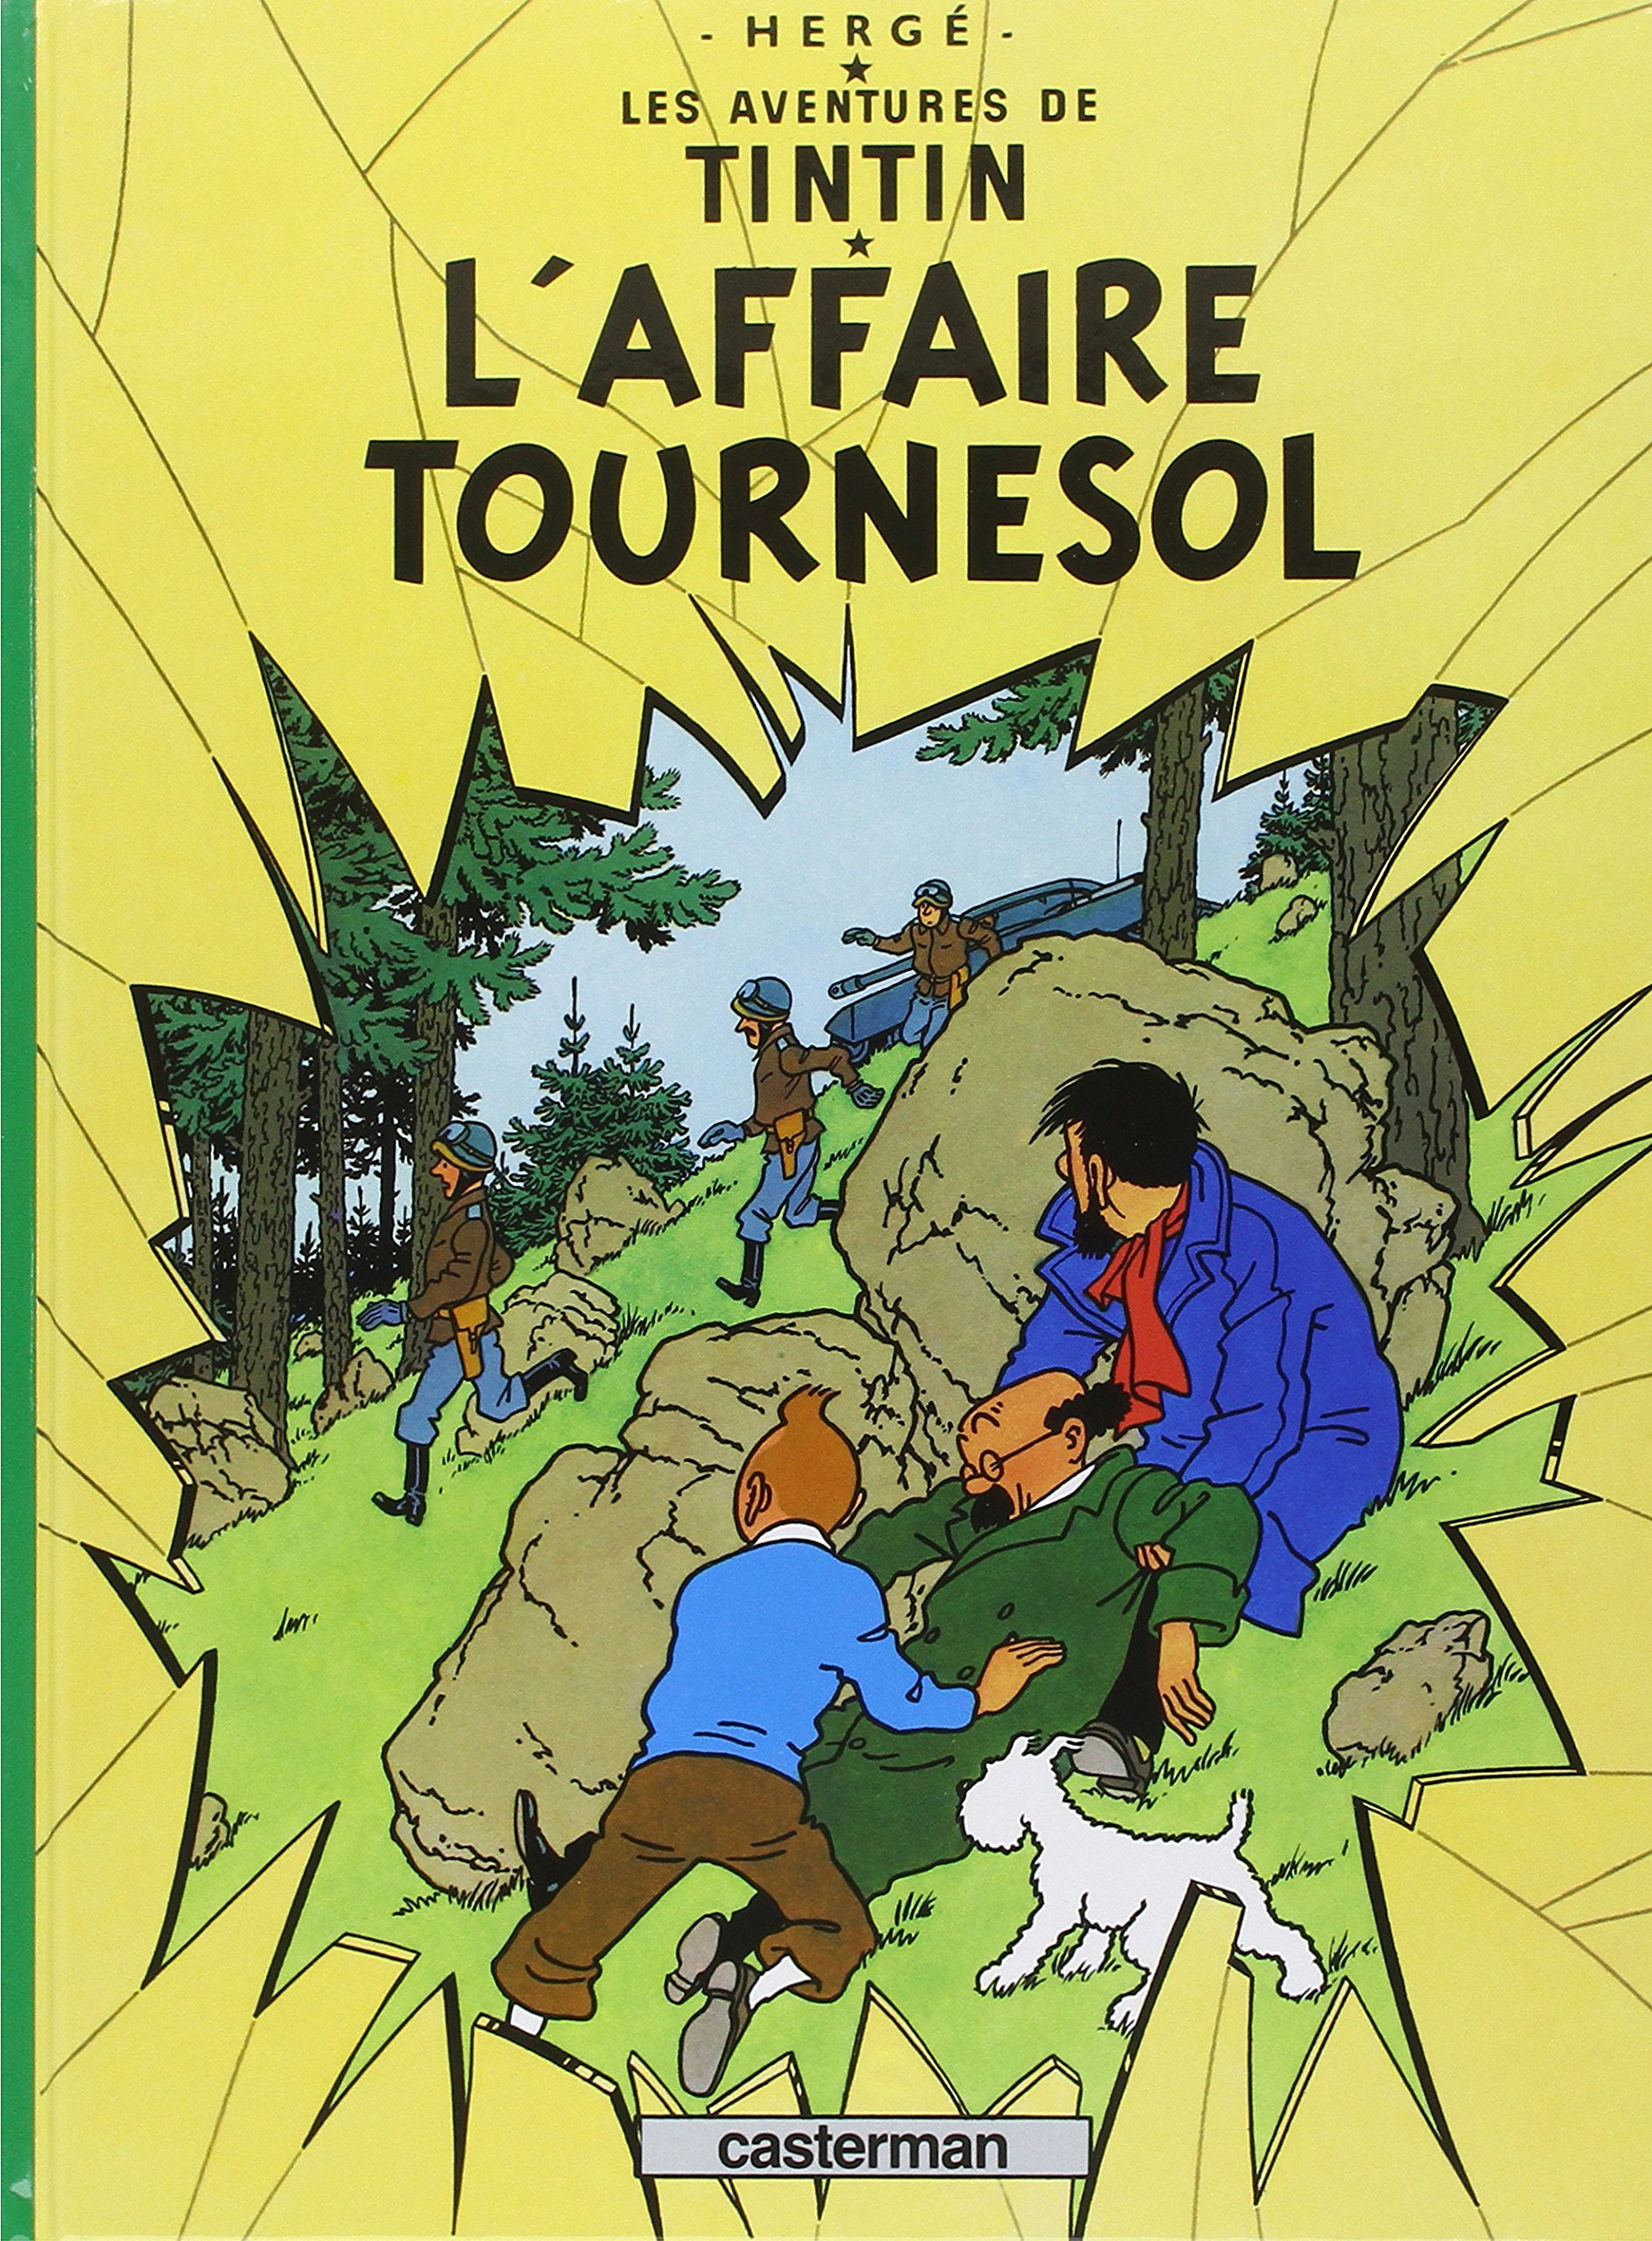 Les Aventures de Tintin : les 10 meilleurs épisodes